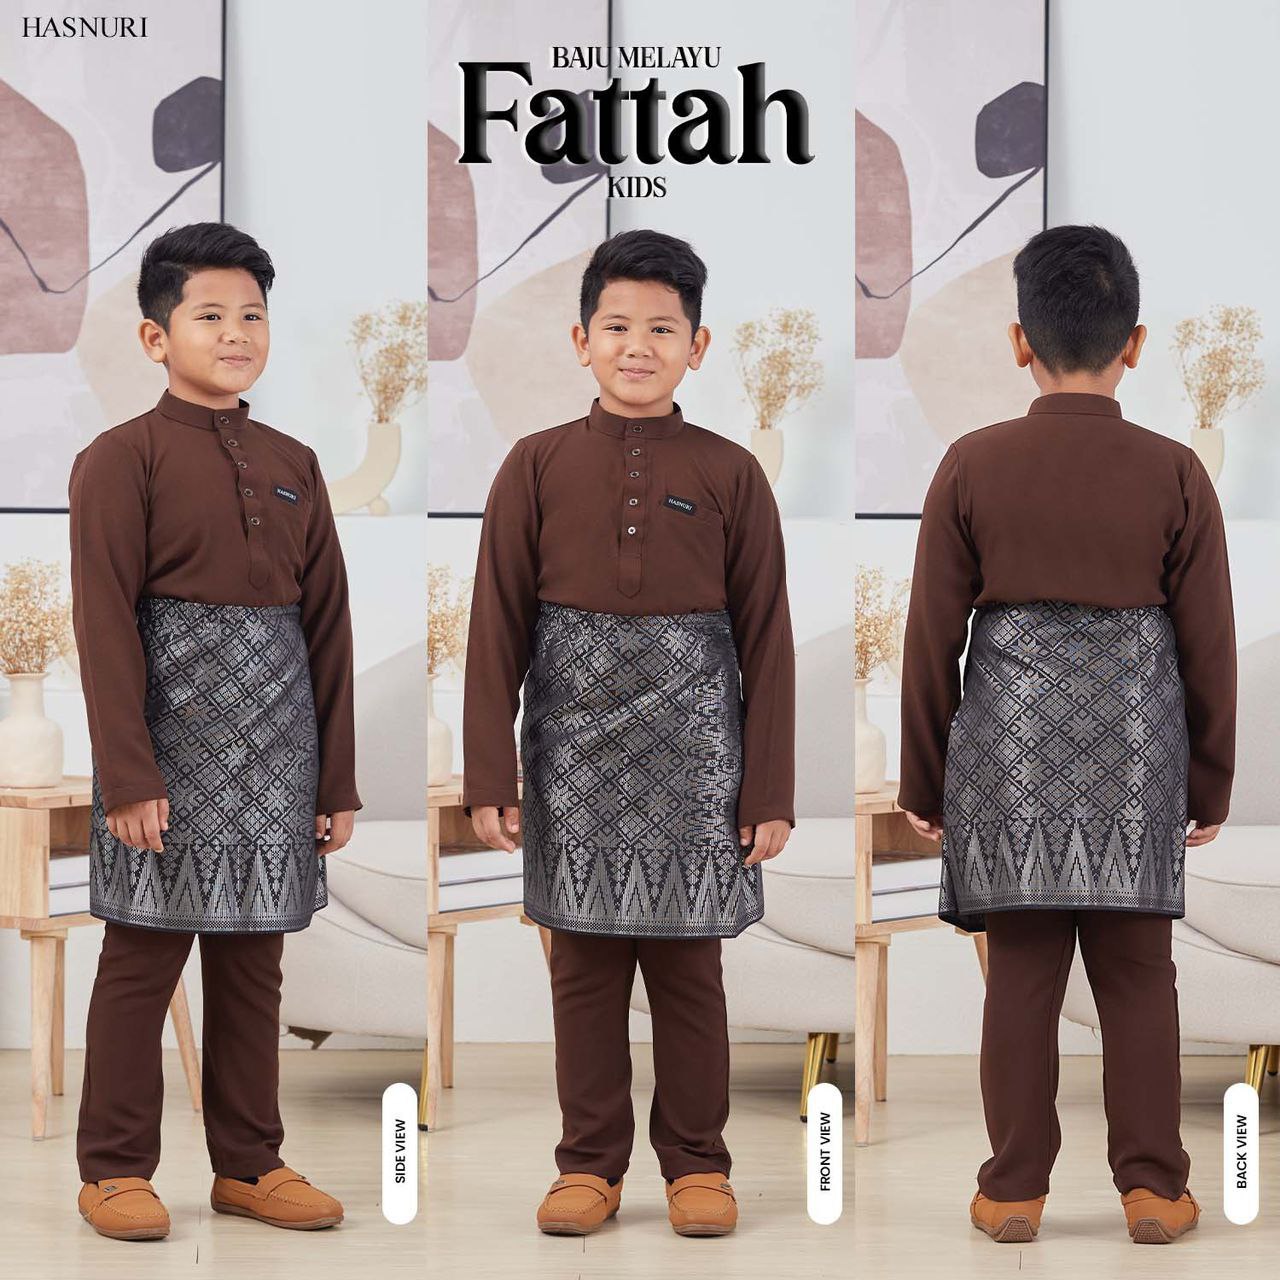 Baju Melayu Fattah Kids - Light Mauve